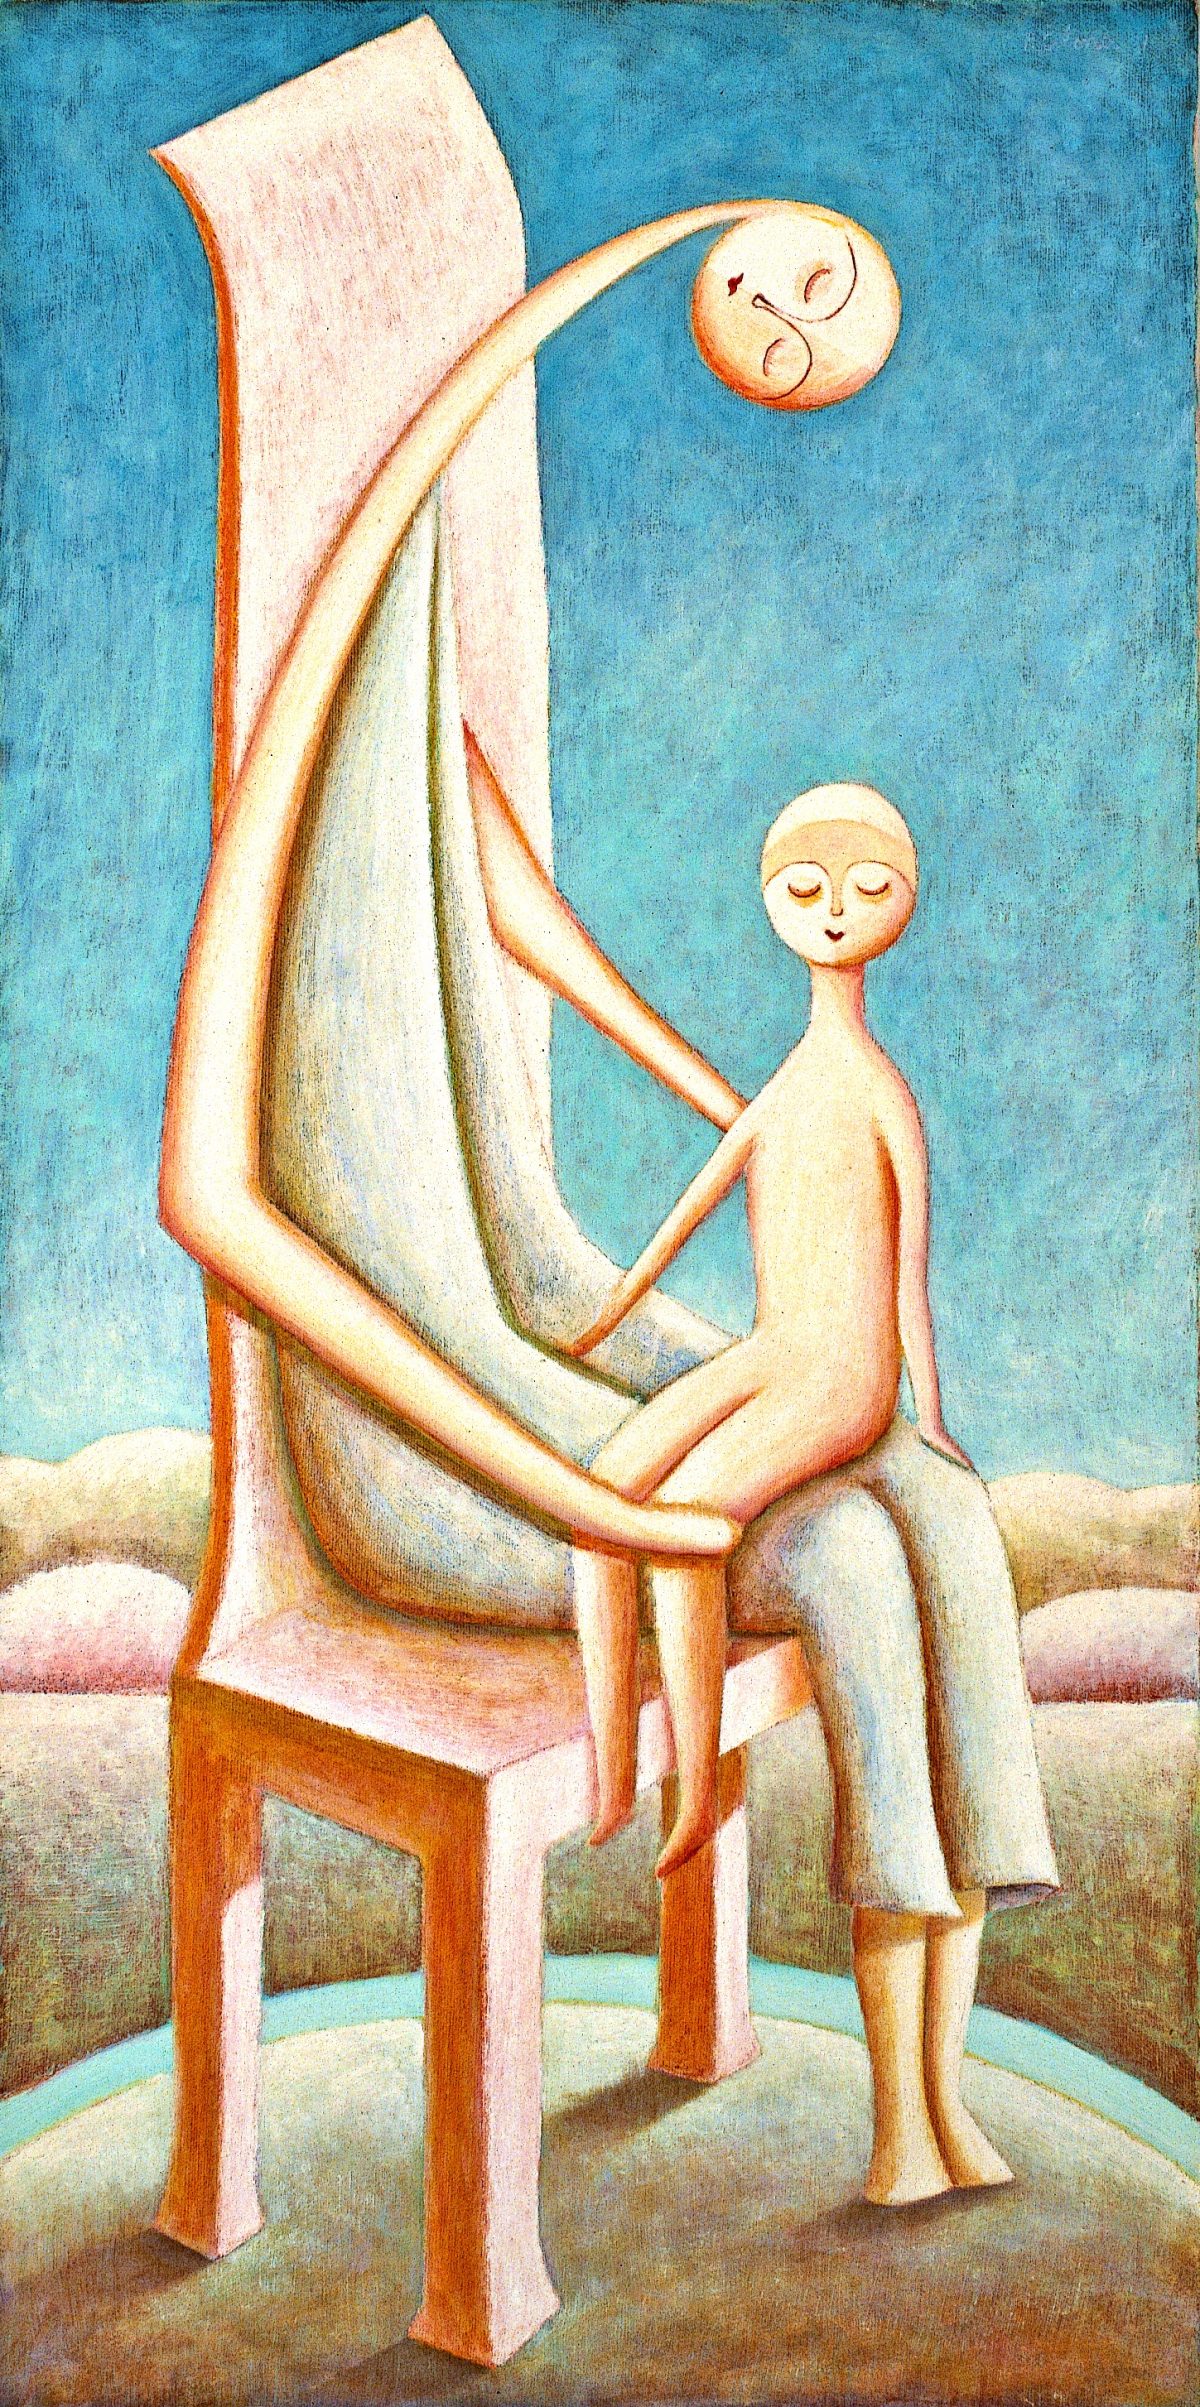 Maternità, 1980
Olio su tela
80 x 40 cm,
FV027